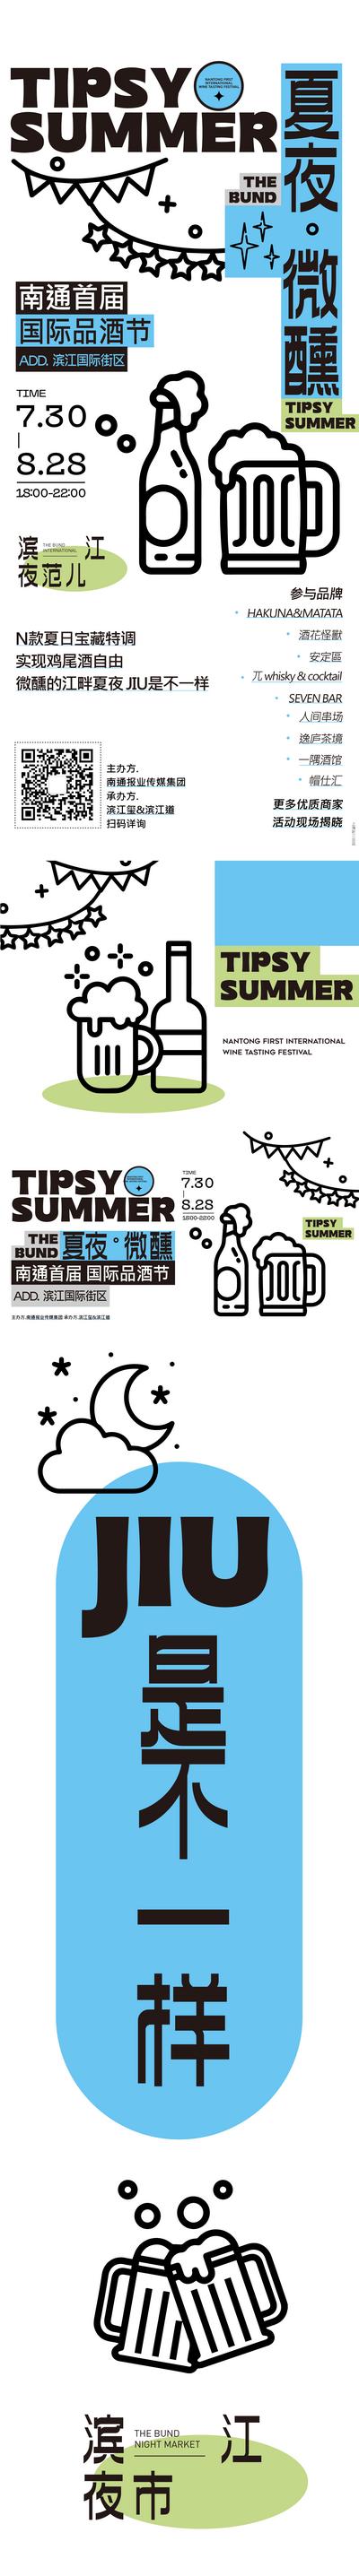 南门网 专题设计 长图 啤酒节 品酒节 简约 大气